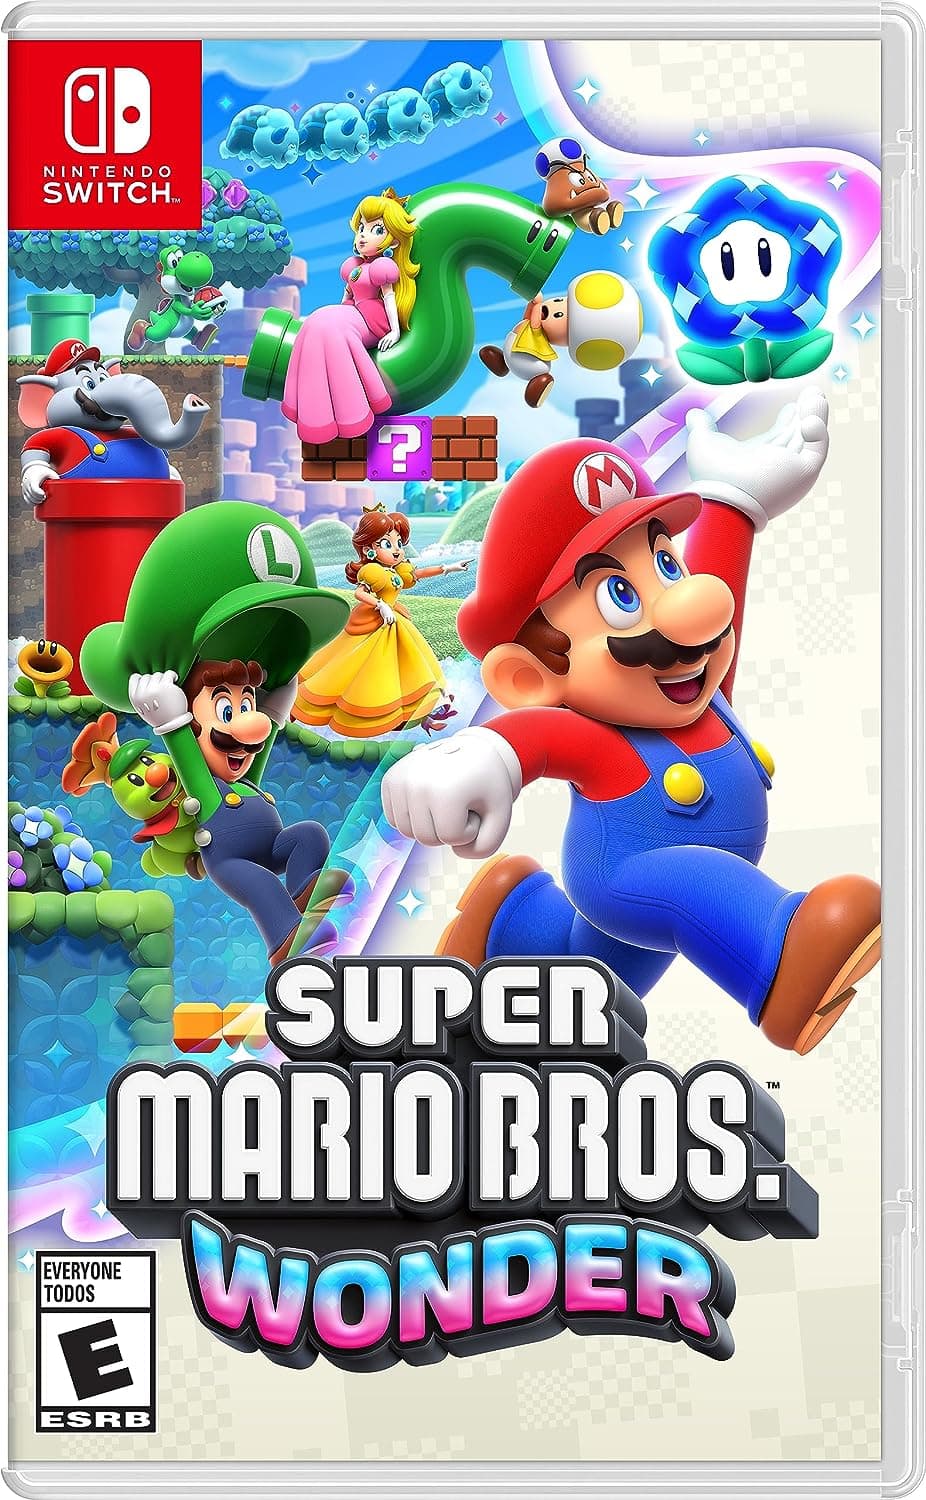 Super Mario Bros. Wonder für Nintendo Switch.